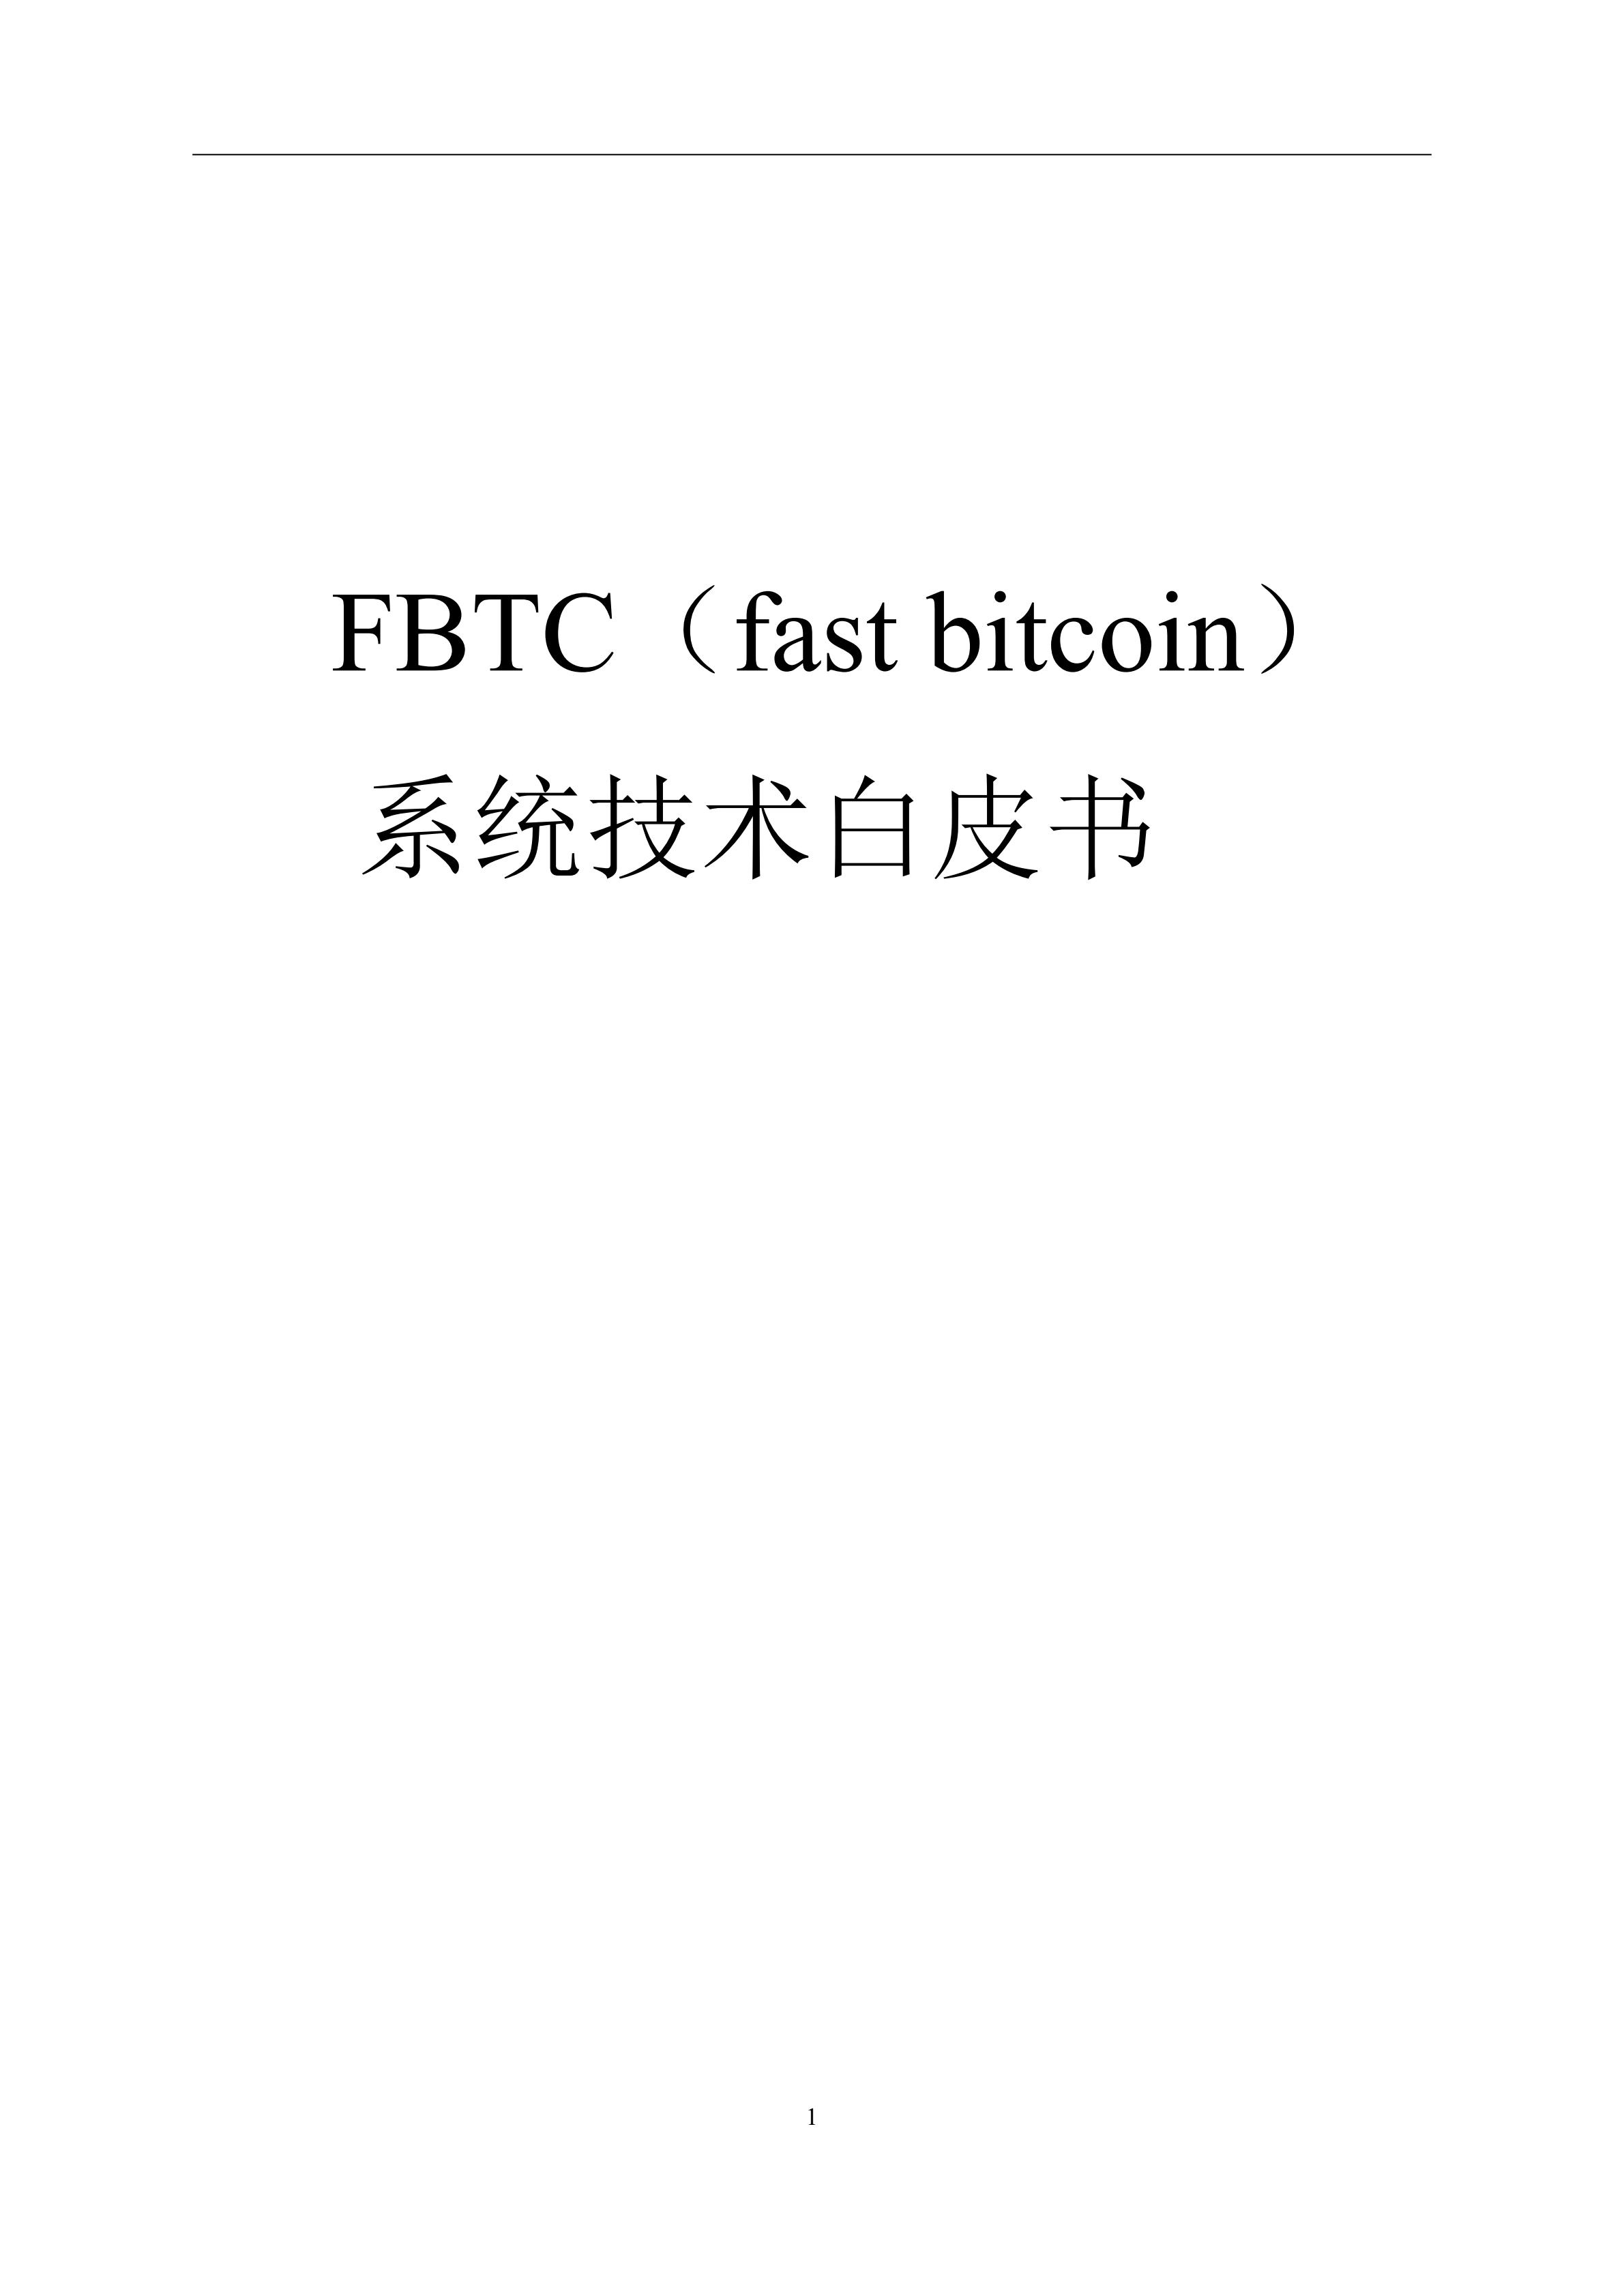 FBTC_whitepaper_00.jpg